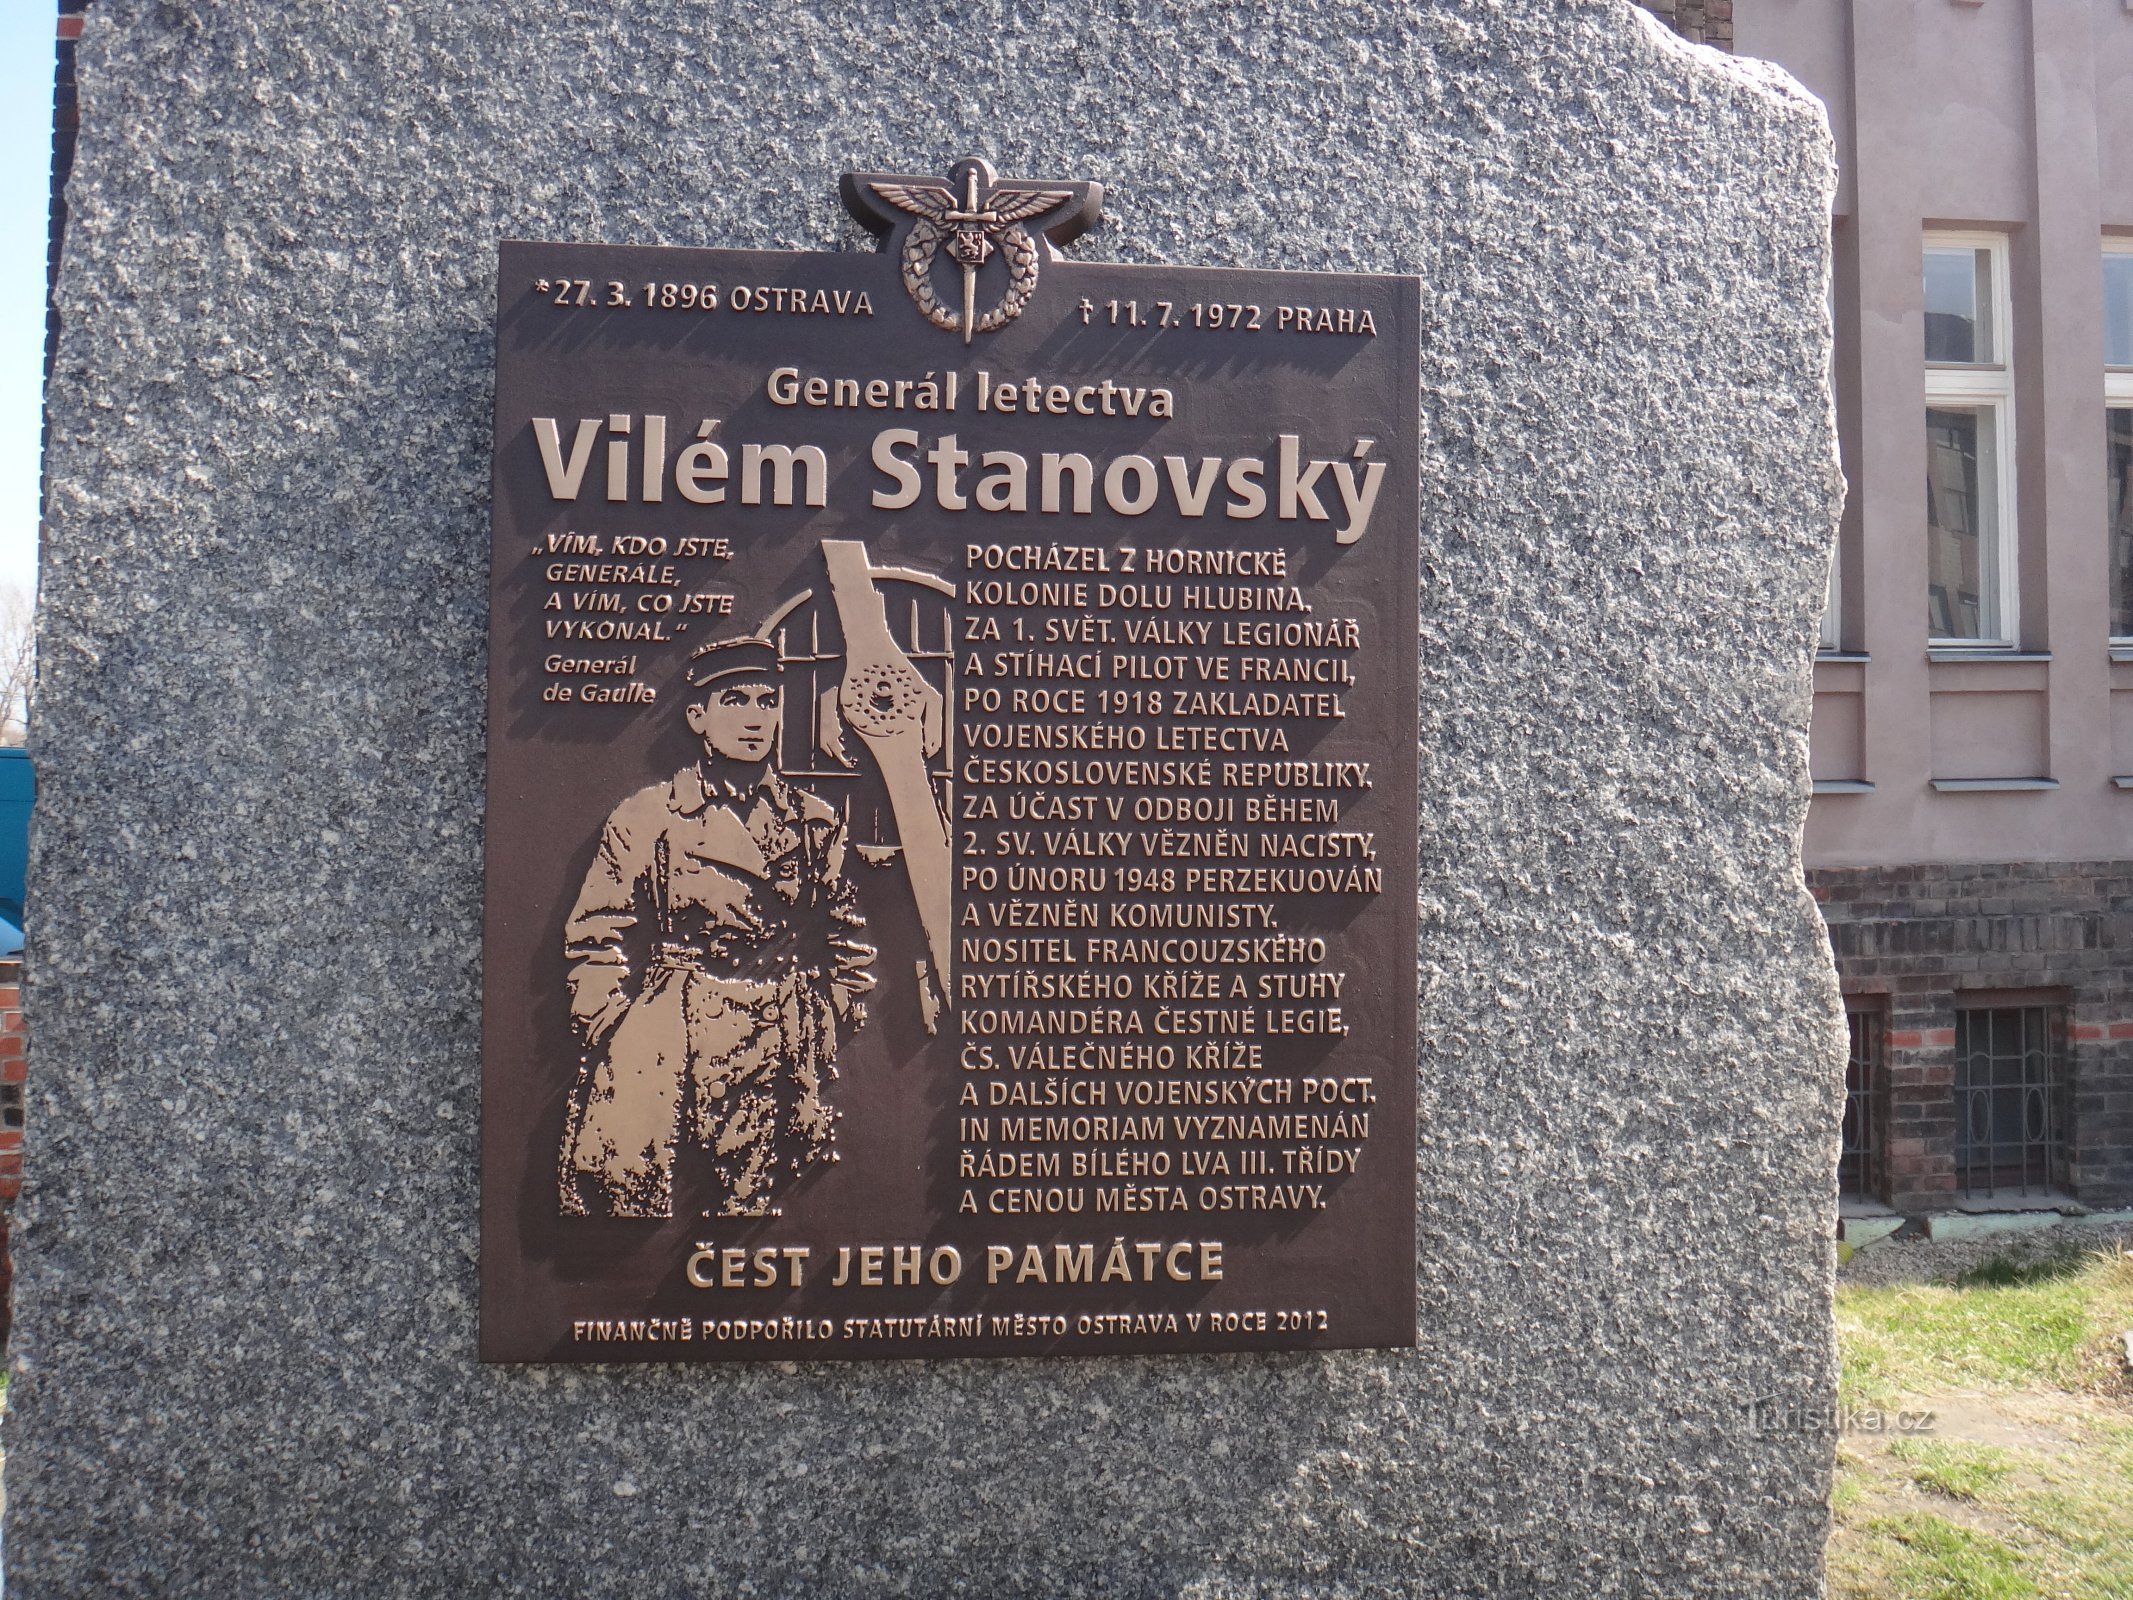 spomenik Vilému Stanovskom